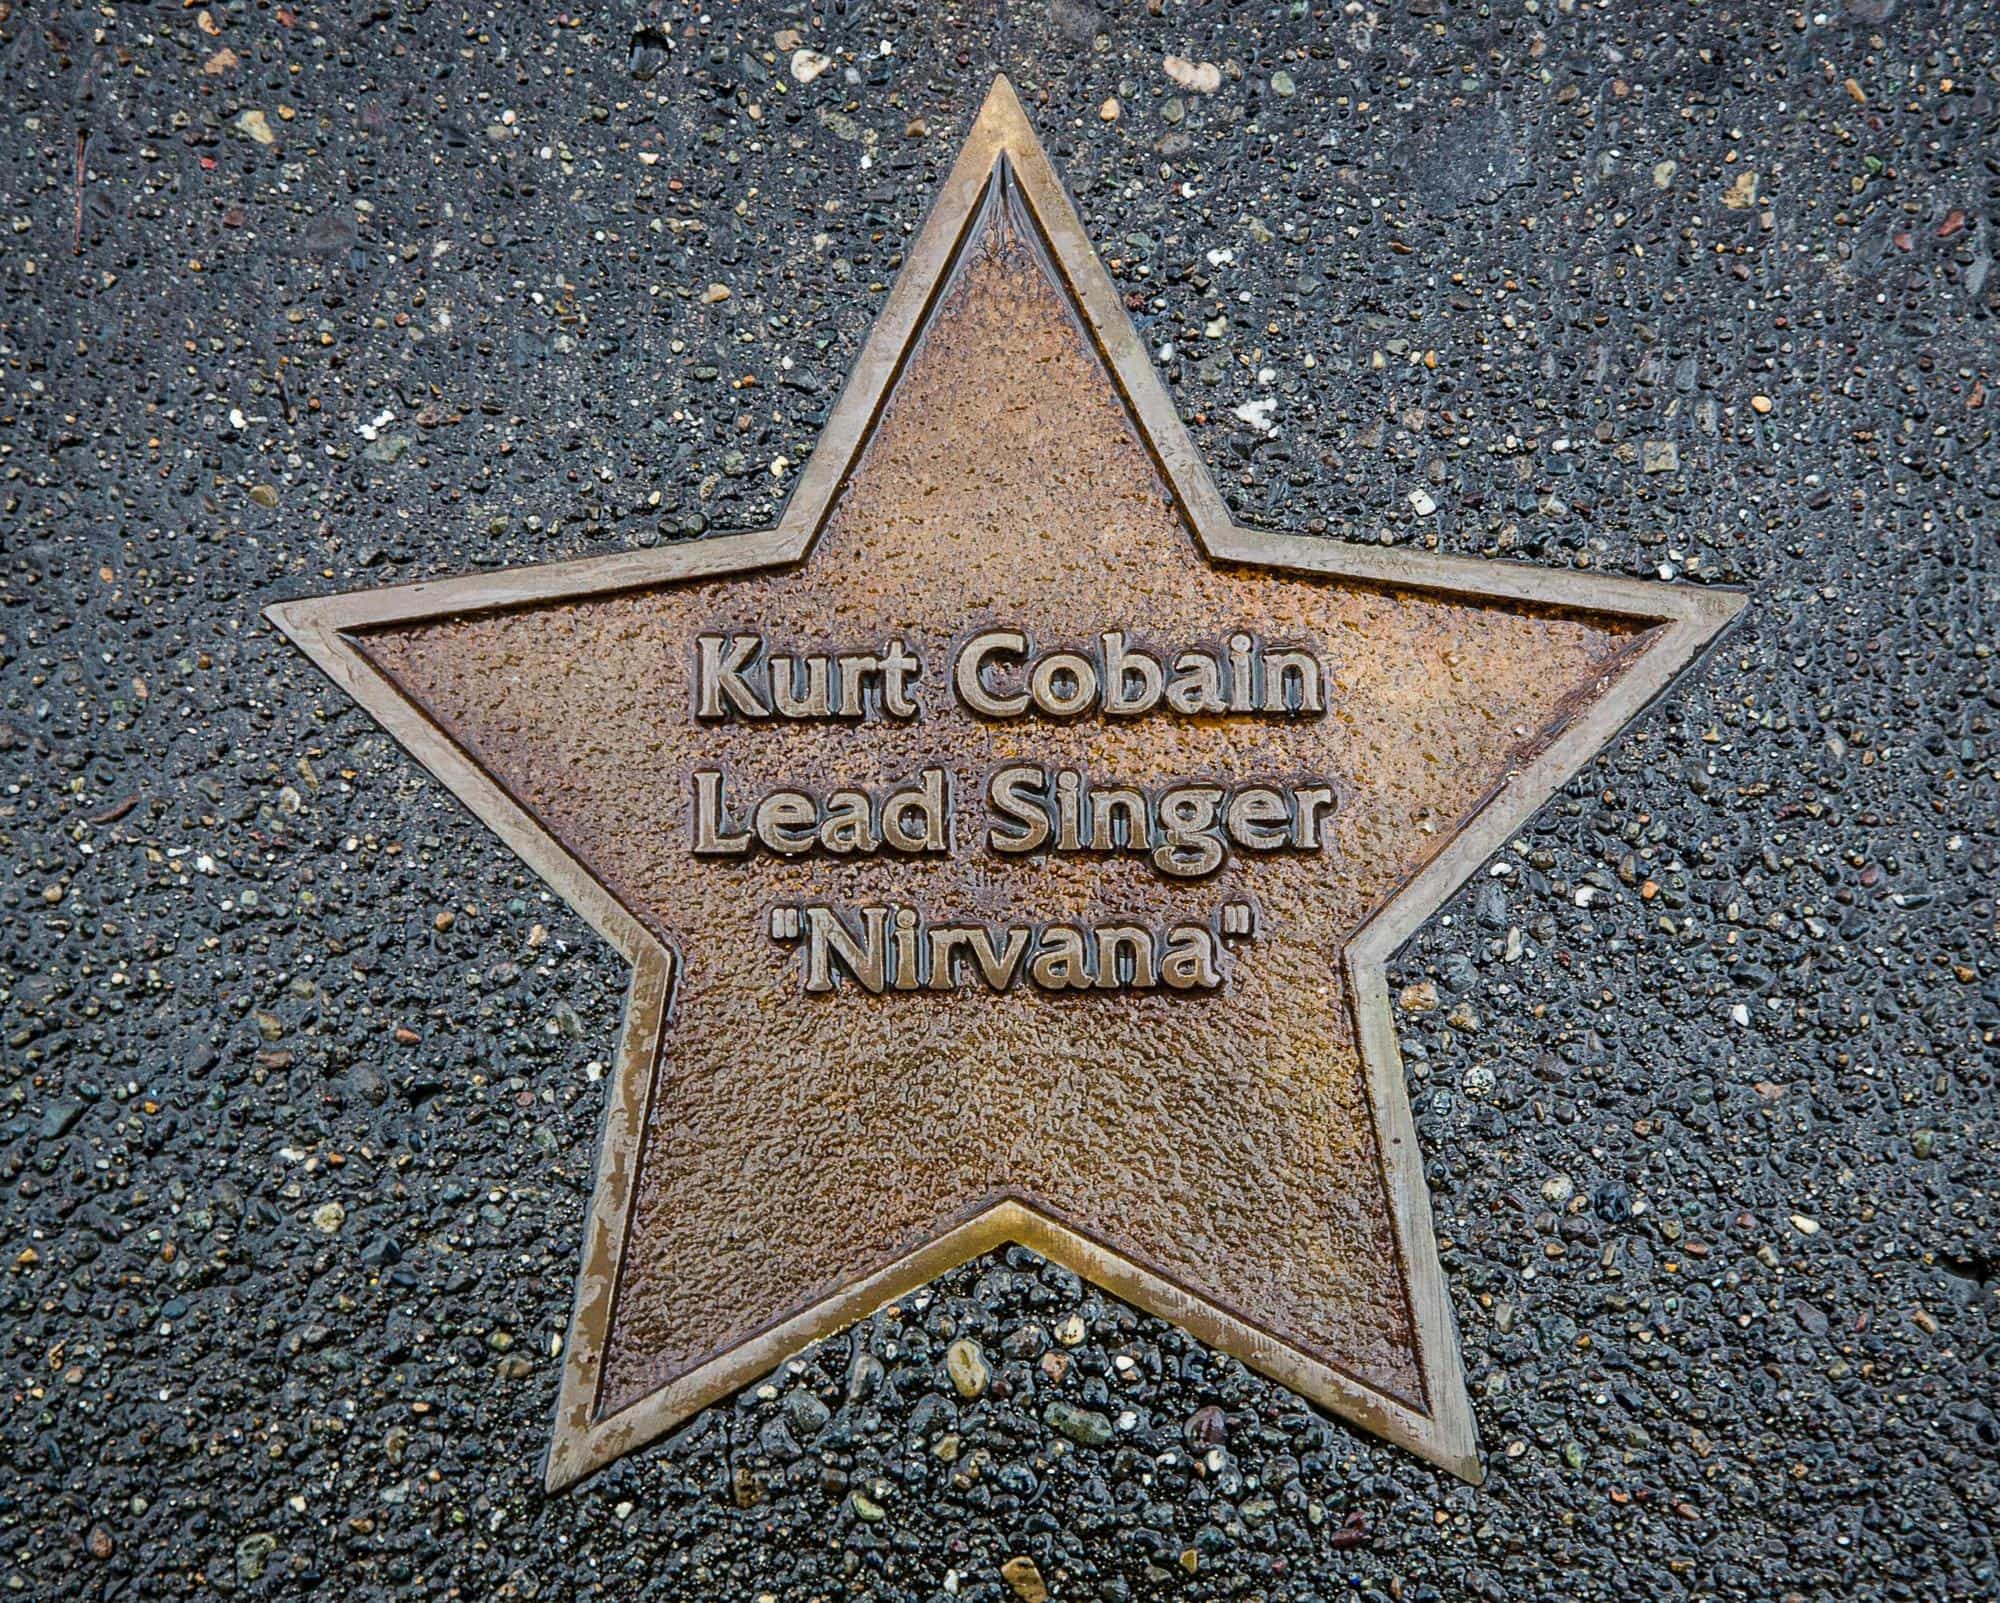 Kurt Cobain Walk of Fame star